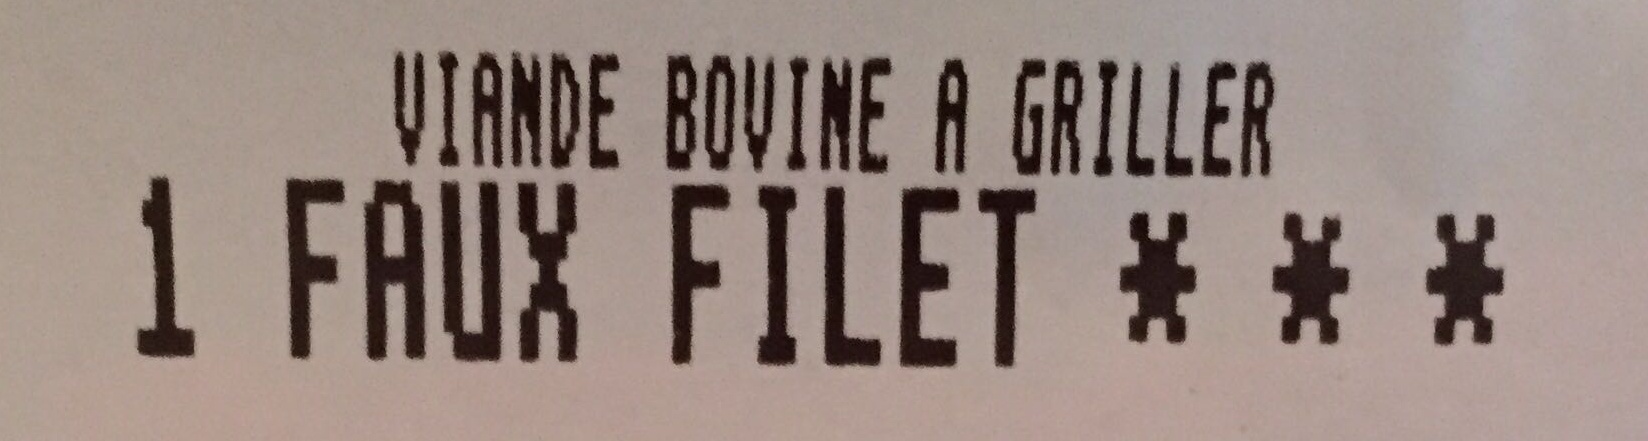 1 Faux-Filet persillé & savoureux - Ingredients - fr